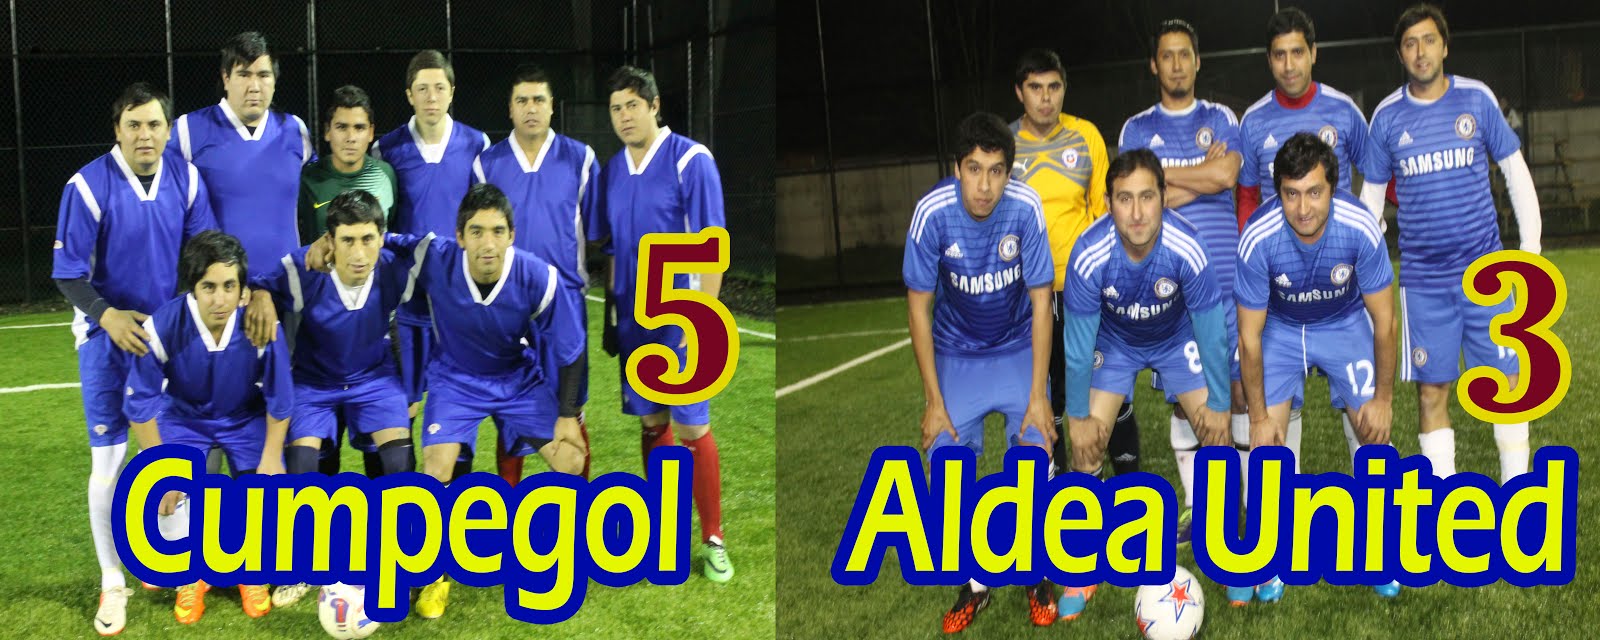 Cumpegol Vs Aldea United